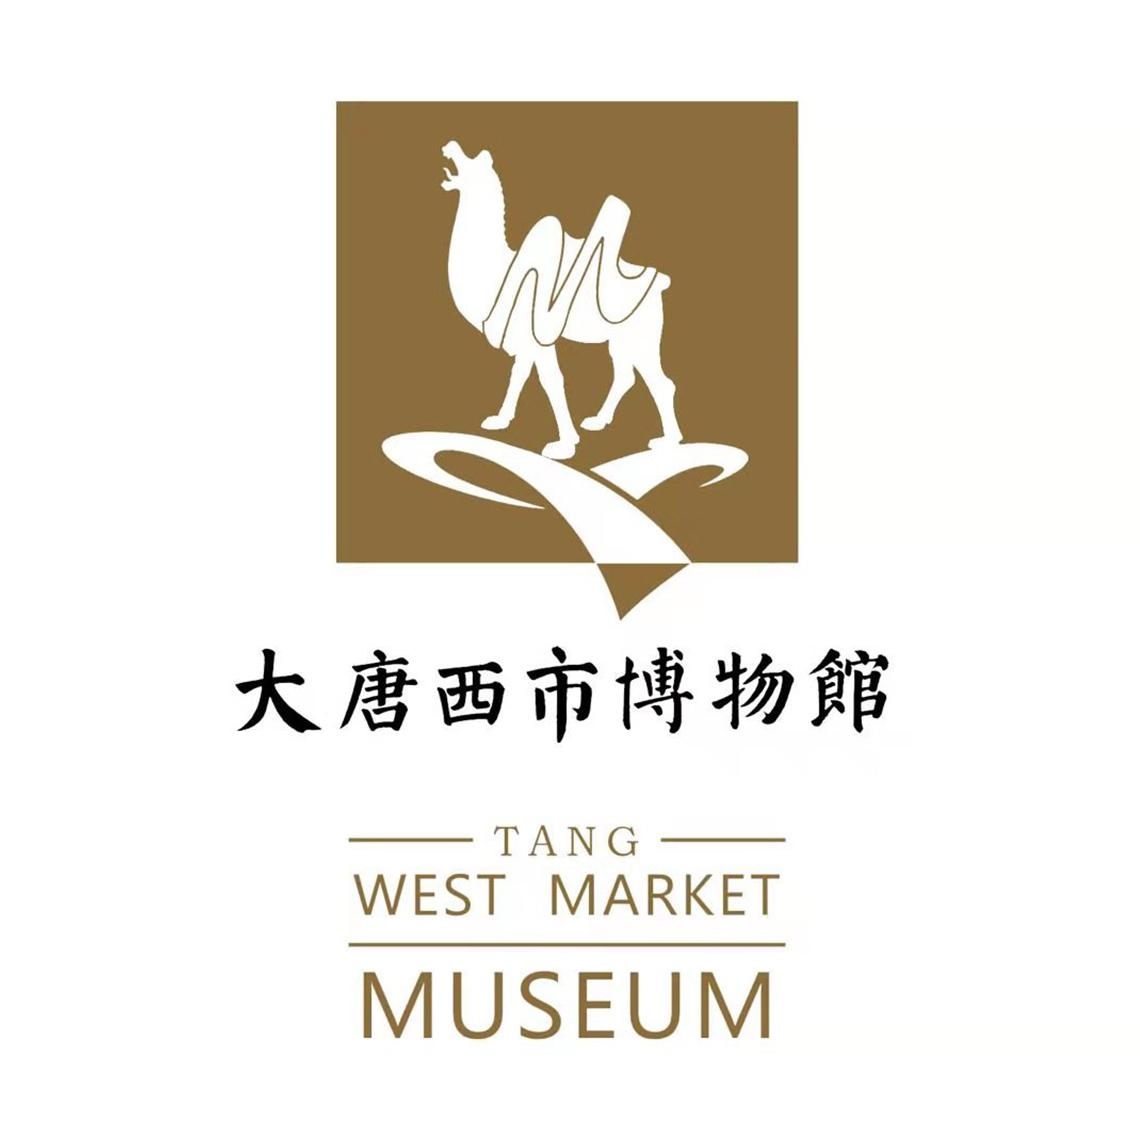 大唐西市博物馆 tang west market museum m 商标公告